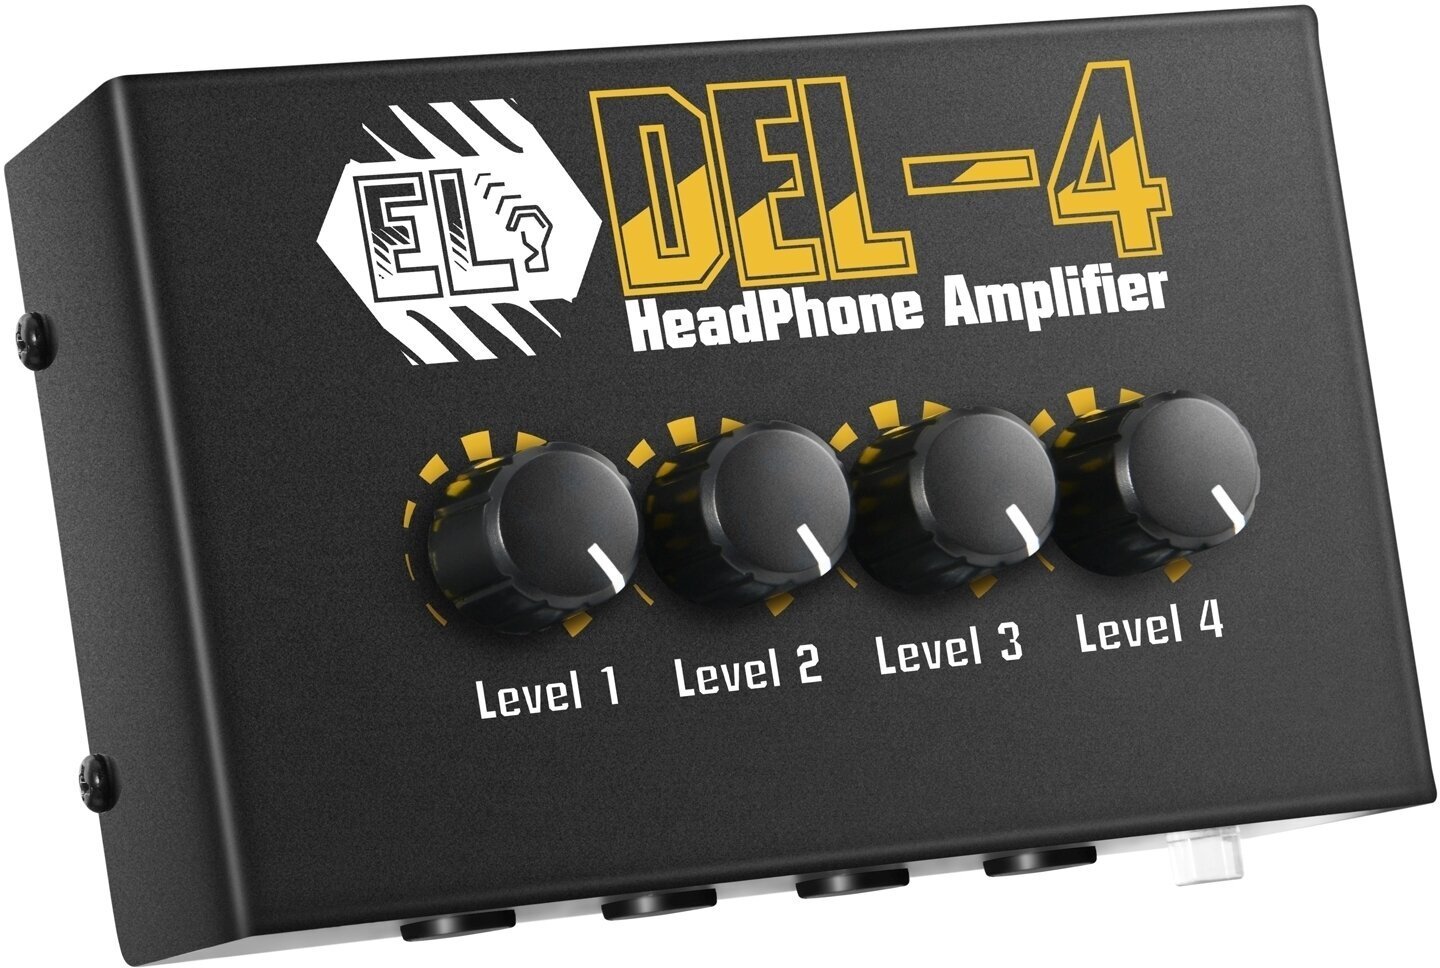 Headphone amplifier Donner EC1239 DEL-4 Headphone amplifier